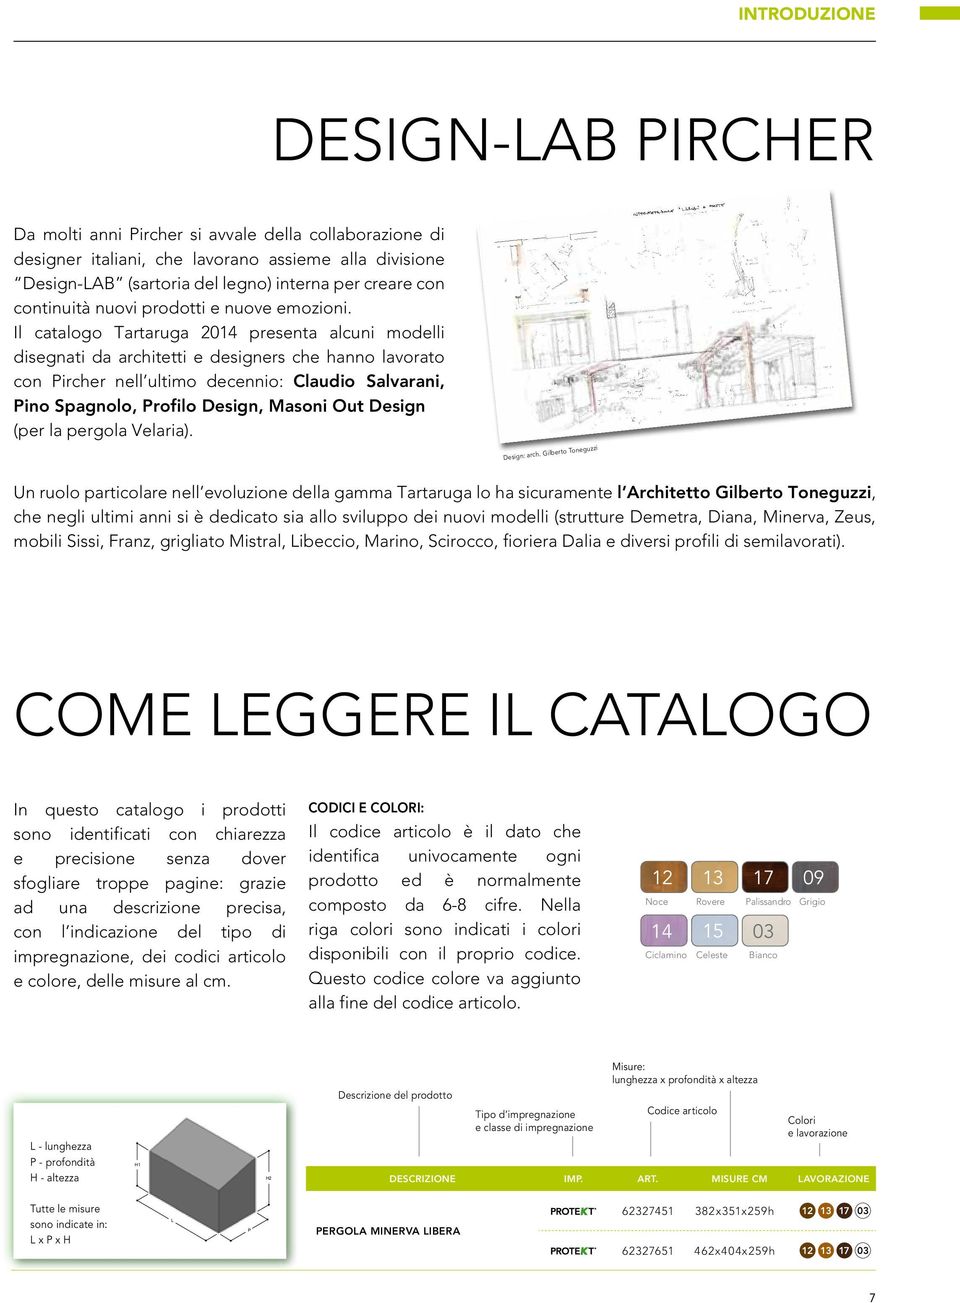 Il catalogo Tartaruga 2014 presenta alcuni modelli disegnati da architetti e designers che hanno lavorato con Pircher nell ultimo decennio: Claudio Salvarani, Pino Spagnolo, Profilo Design, Masoni